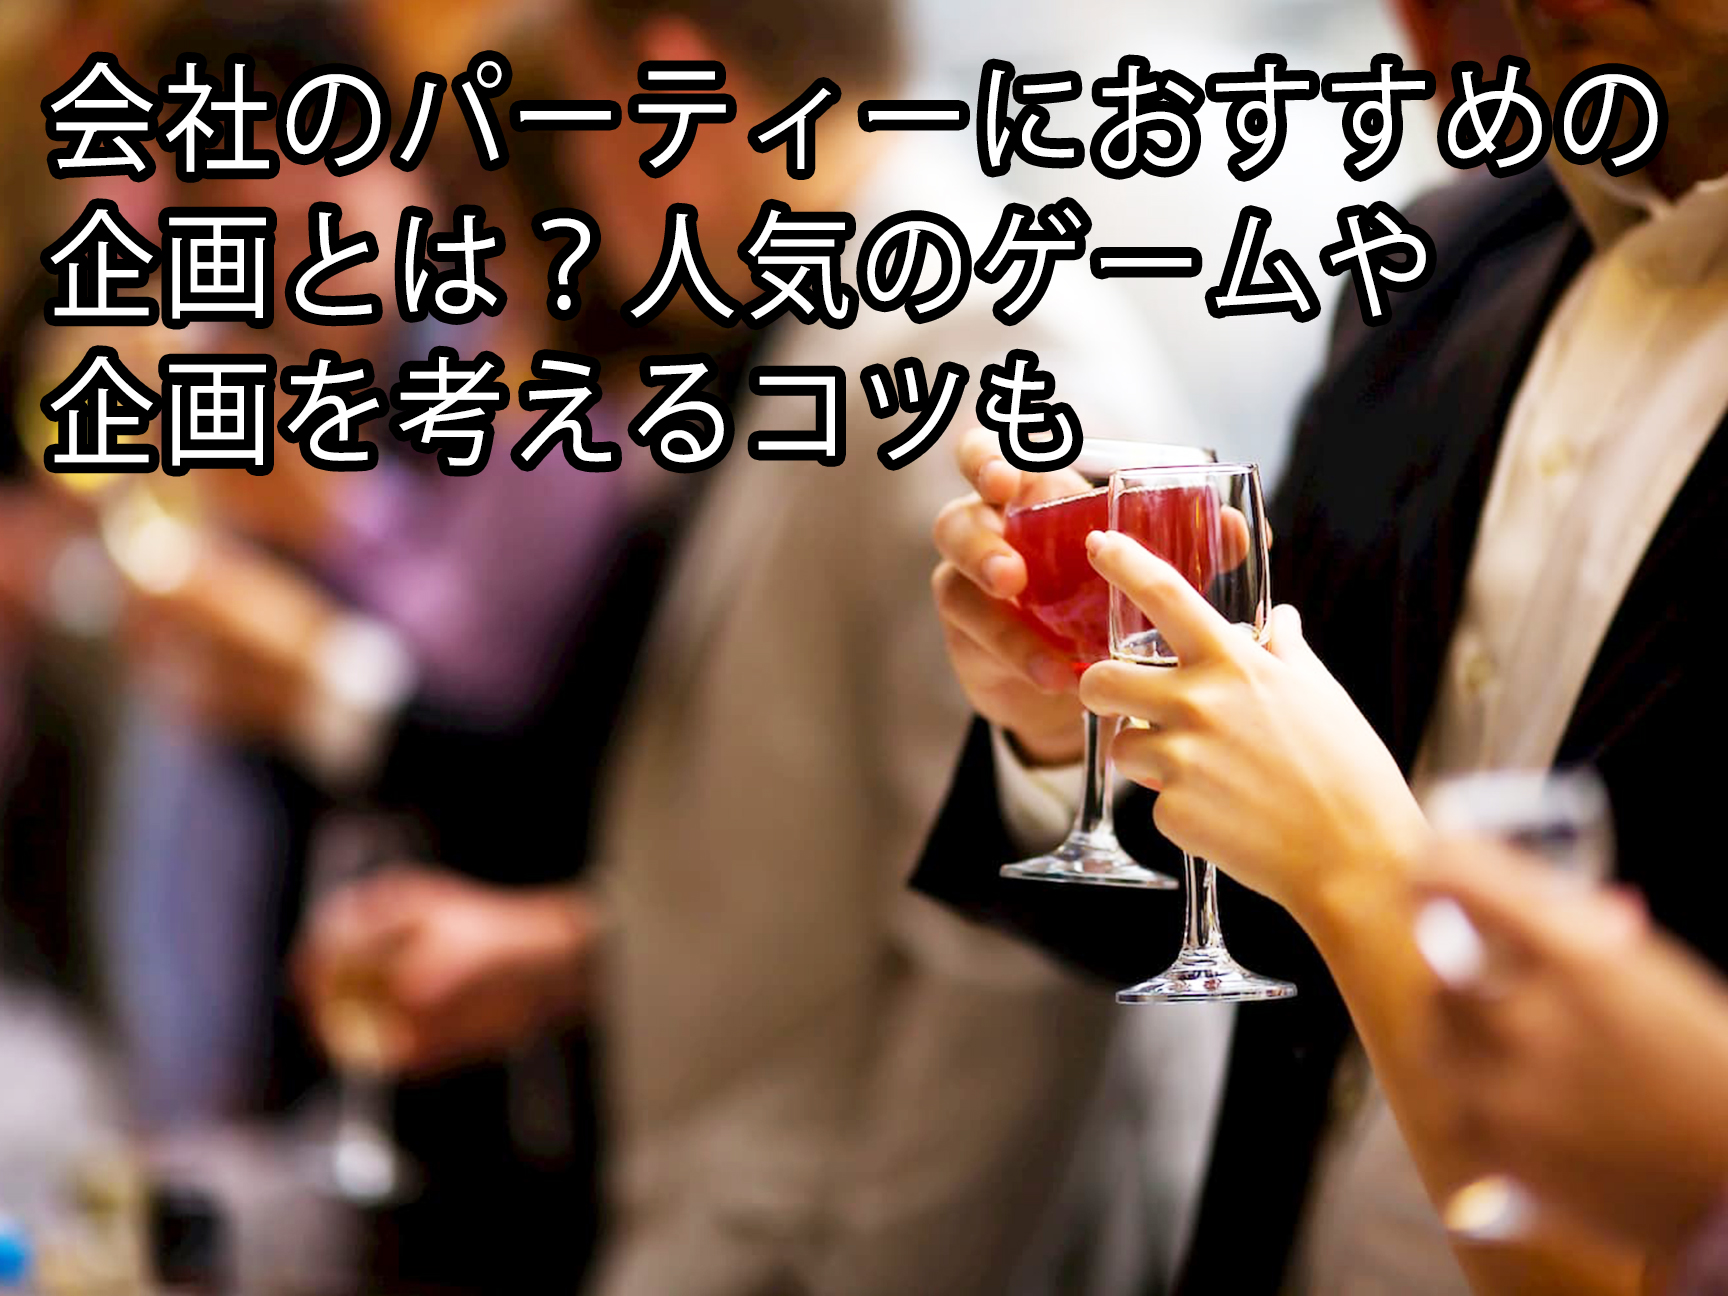 会社のパーティーにおすすめの企画とは 人気のゲームや企画を考えるコツも 東京のケータリングサービス サンケイ会館